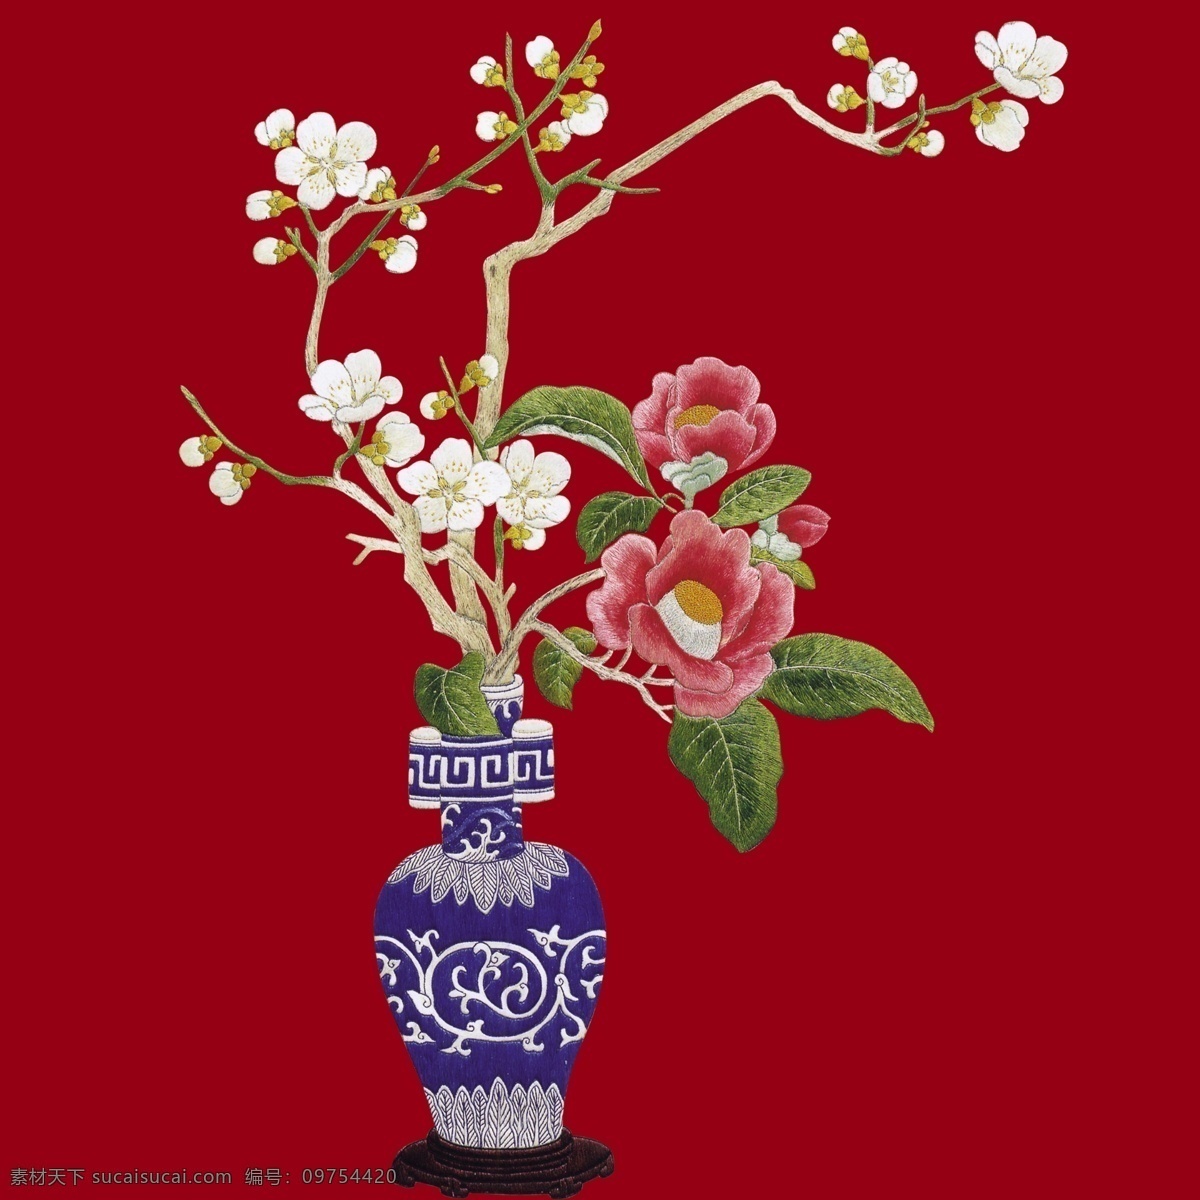 古典素材 中国古典 中国风素材 花瓶 青花瓷 花束 梨花 桃花 花朵 红色 源文件 分层